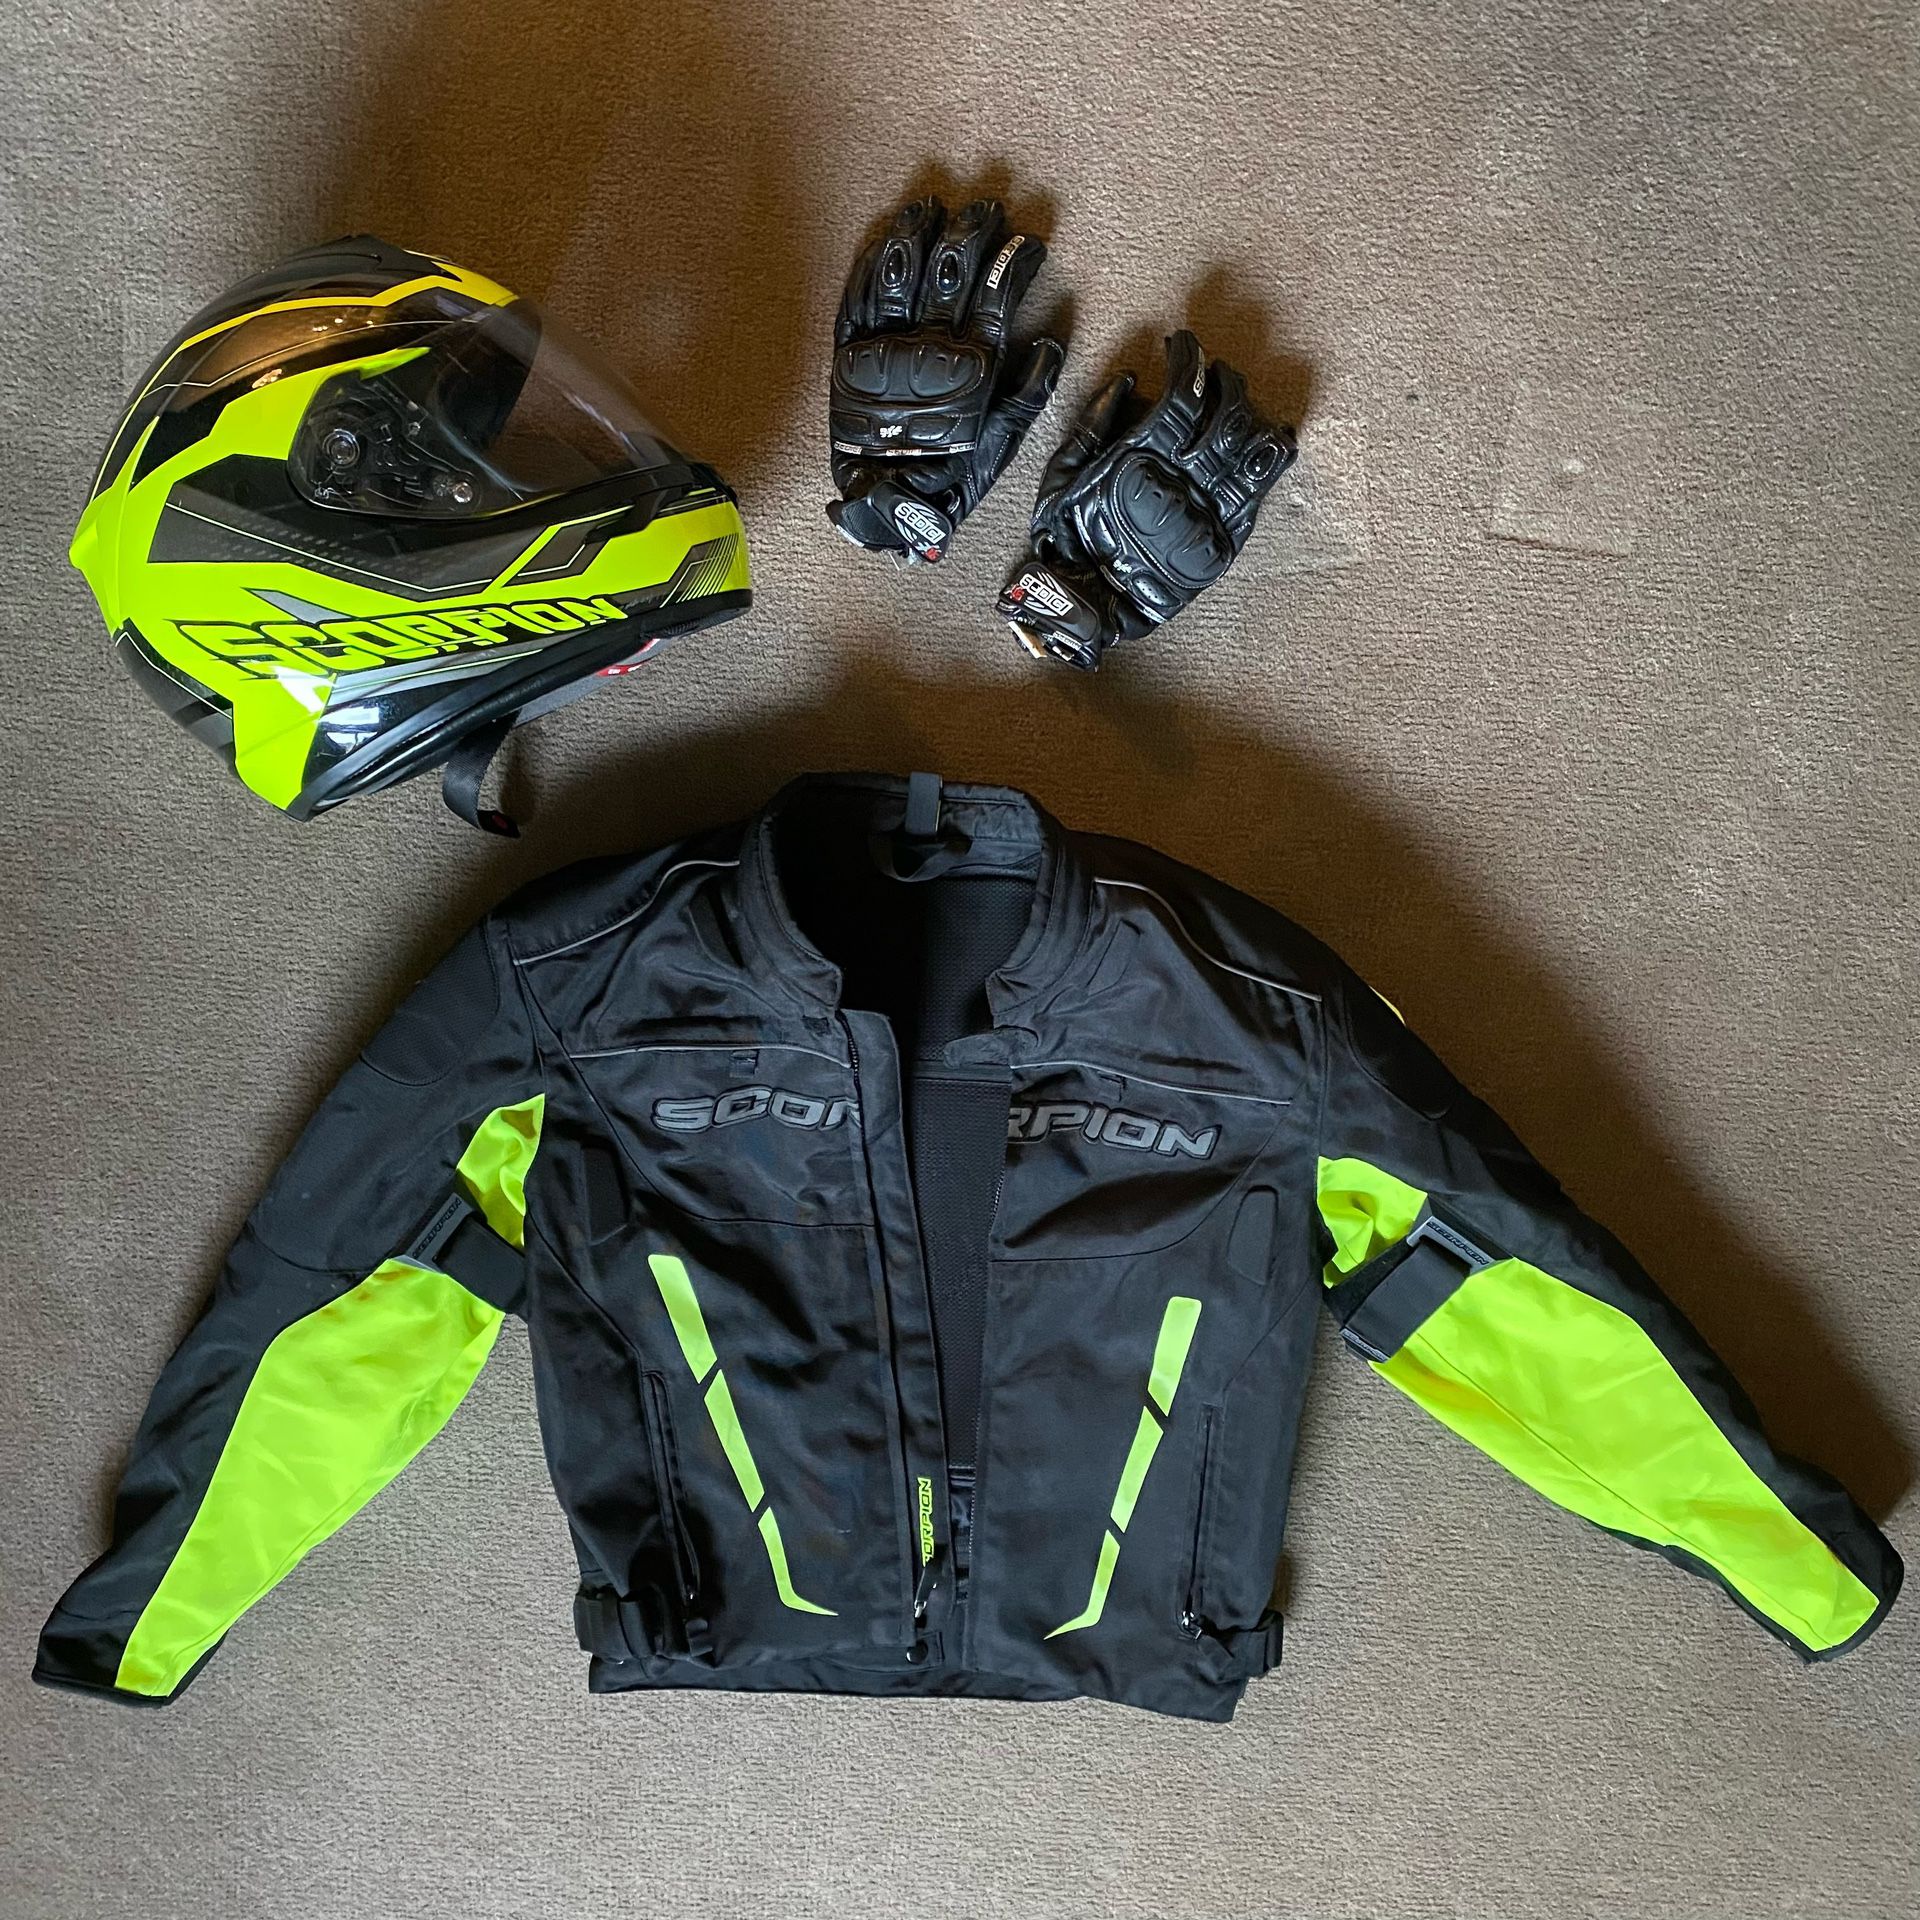 Scorpion Motorcycle Jacket & Helmet w/ Gloves